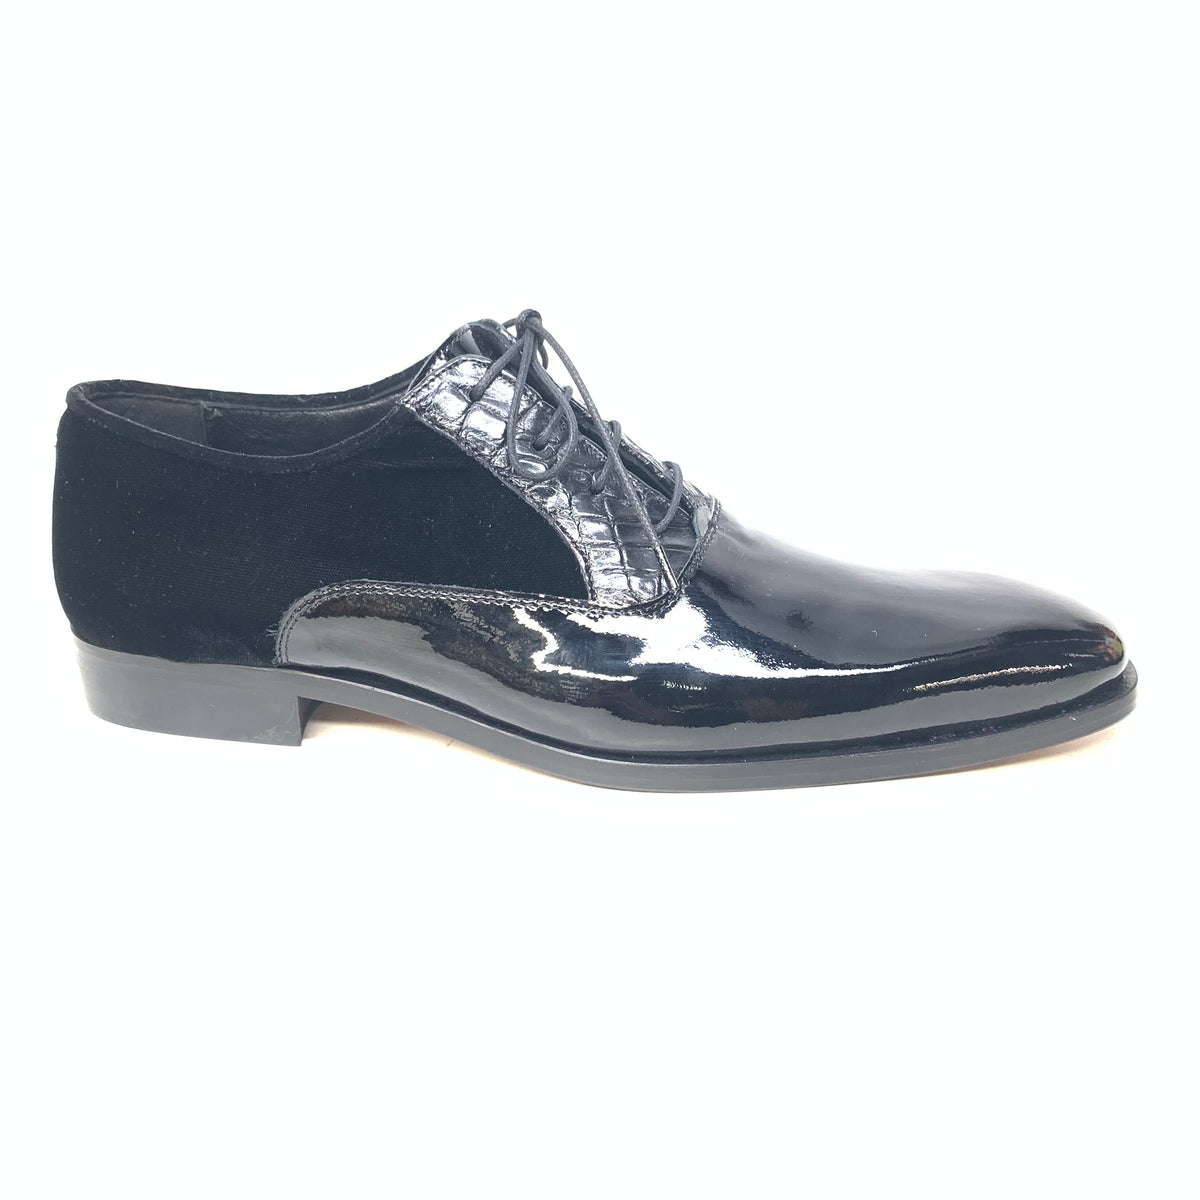 Mauri 4993/2 Black Crocodile/Velvet/Patent Leather Dress Shoes - Dudes Boutique